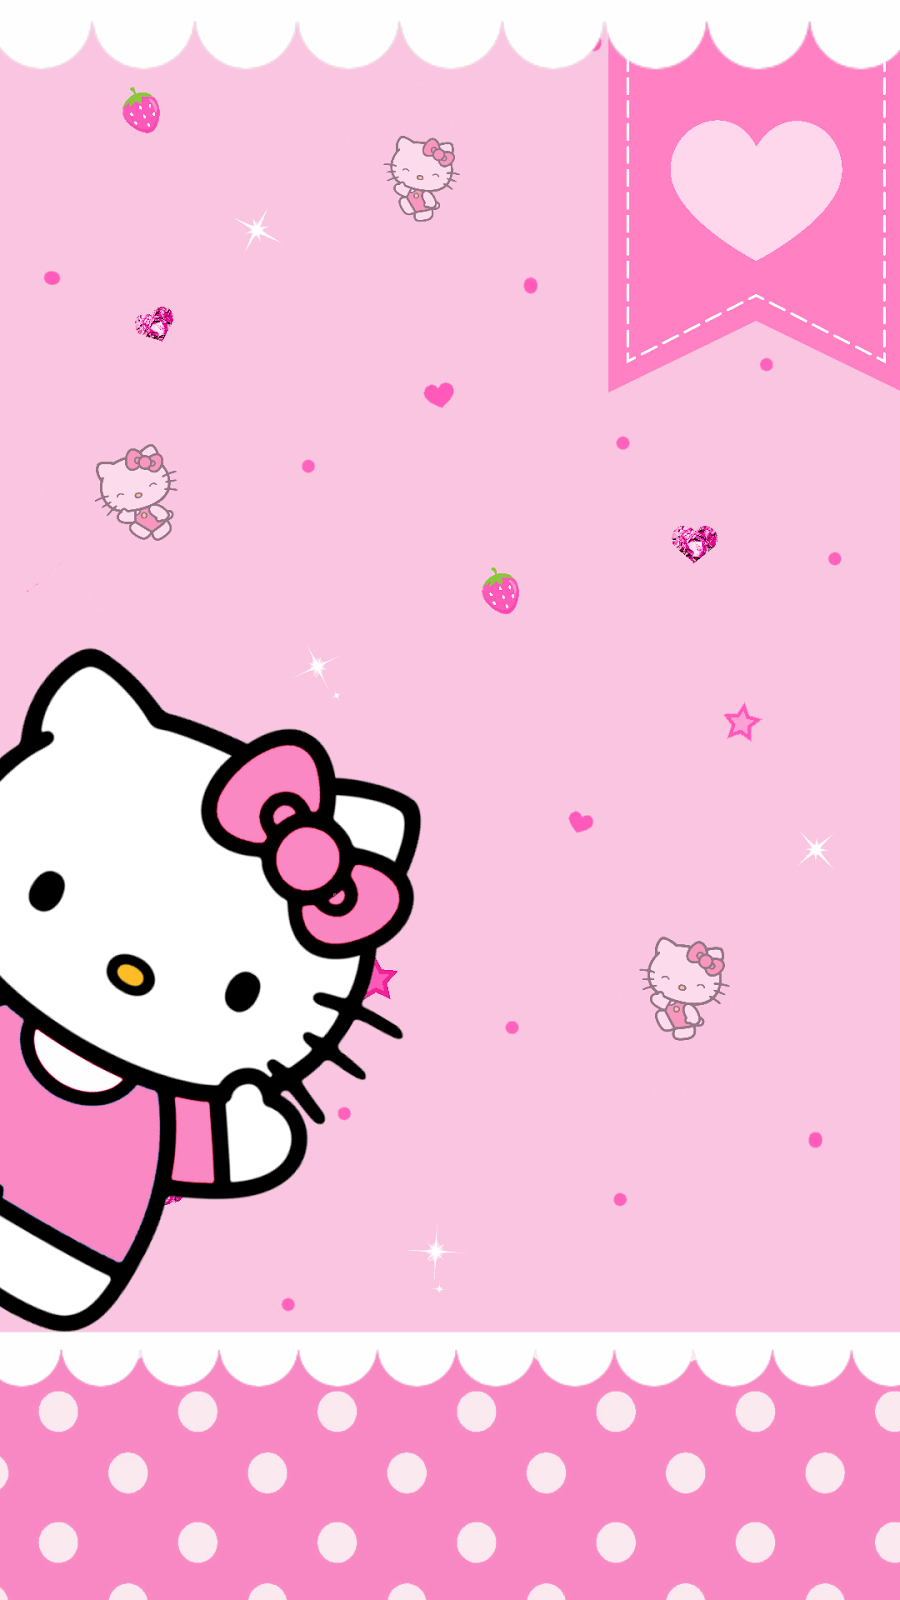 Nền hình nền Hello Kitty màu hồng đầy màu sắc này sẽ đem lại cho bạn cảm giác ngọt ngào và ấm áp. Thật tuyệt vời khi bạn có thể tận hưởng những phút giây thư giãn tuyệt vời với nền hình nền đáng yêu và dễ thương này. Hãy xem bức ảnh này ngay để tận hưởng sự ngọt ngào và dễ chịu của Hello Kitty.